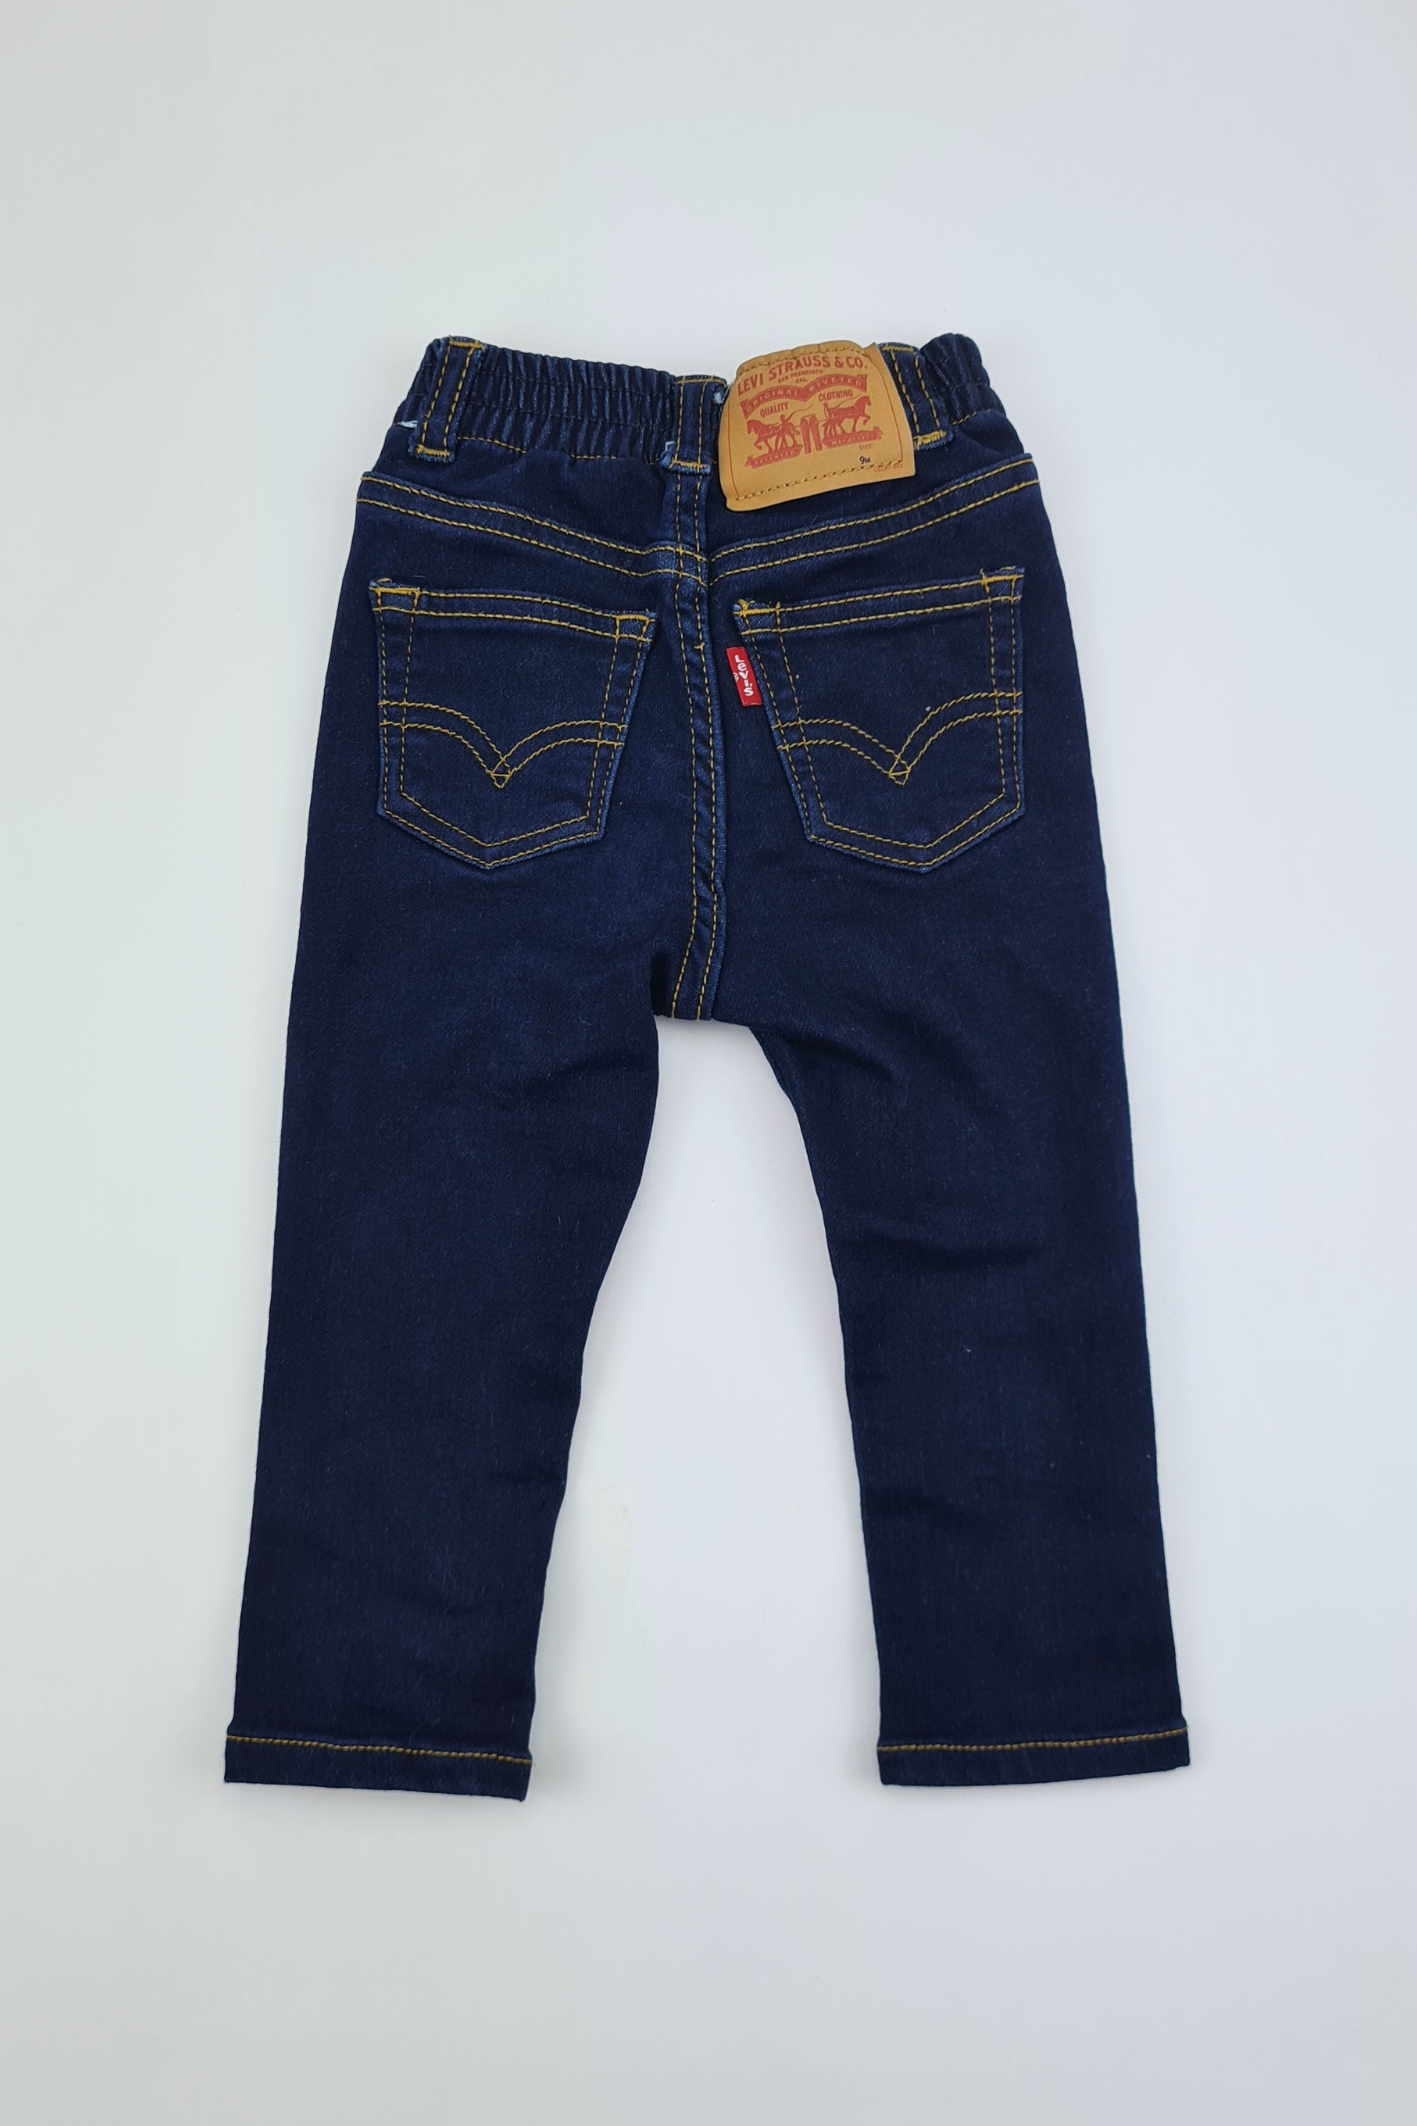 9m - Dunkelblaue Jeans (Levi)